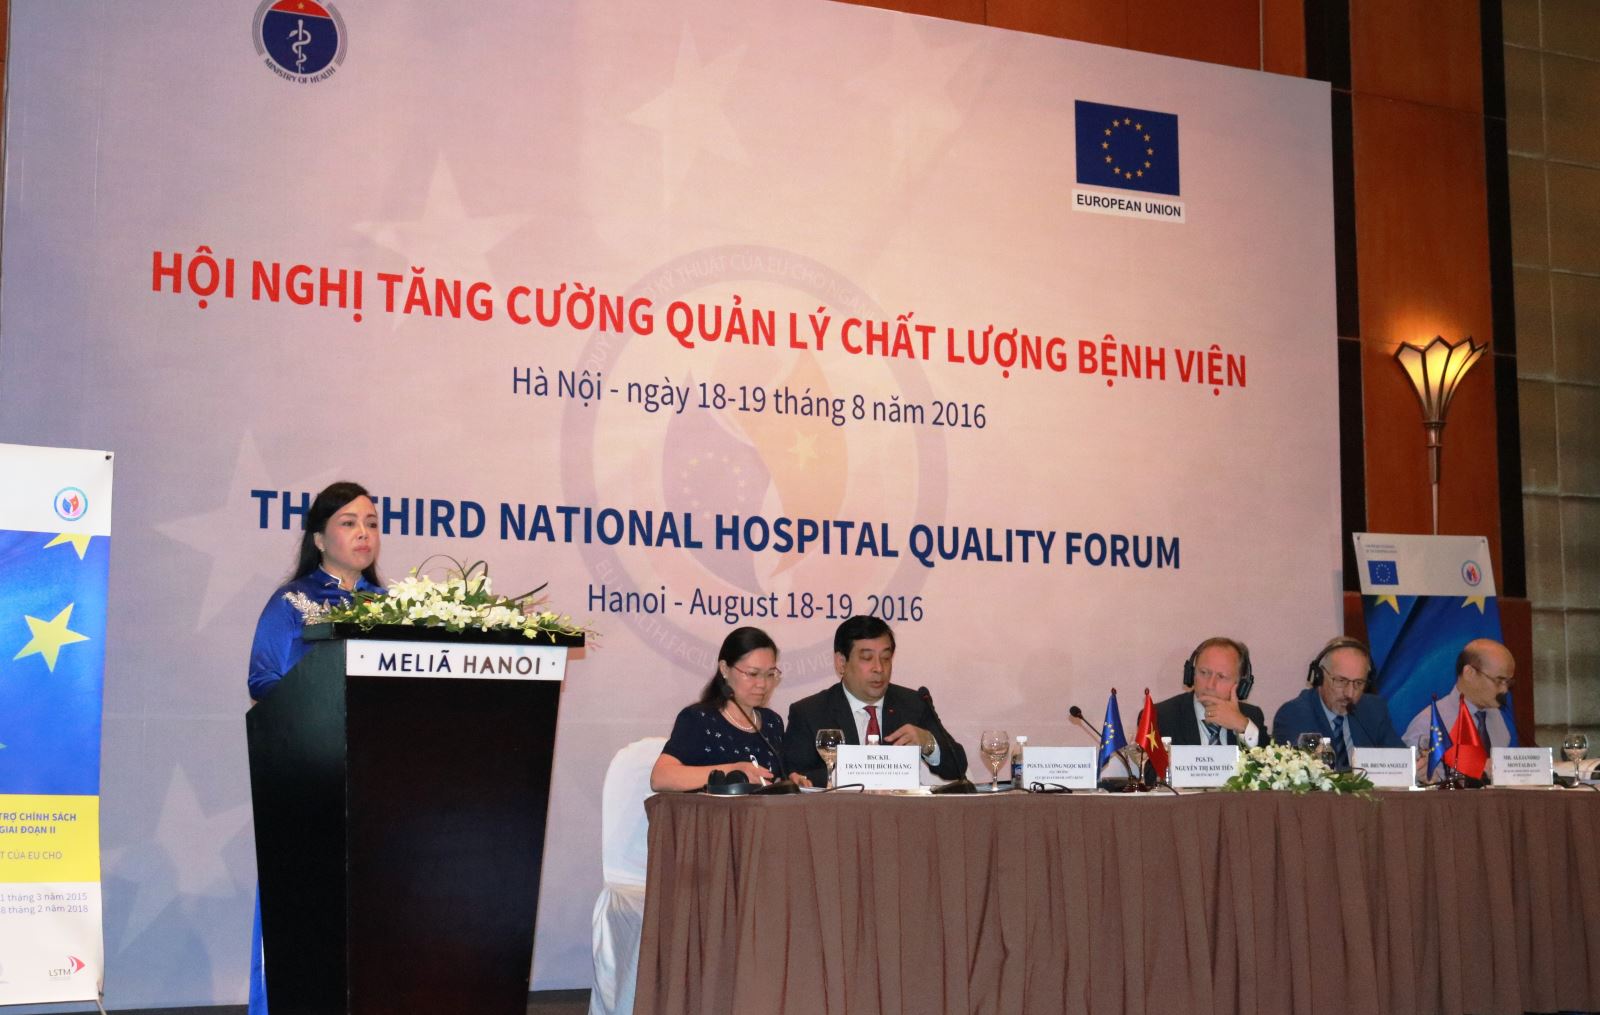 Hội nghị tăng cường quản lý chất lượng bệnh viện